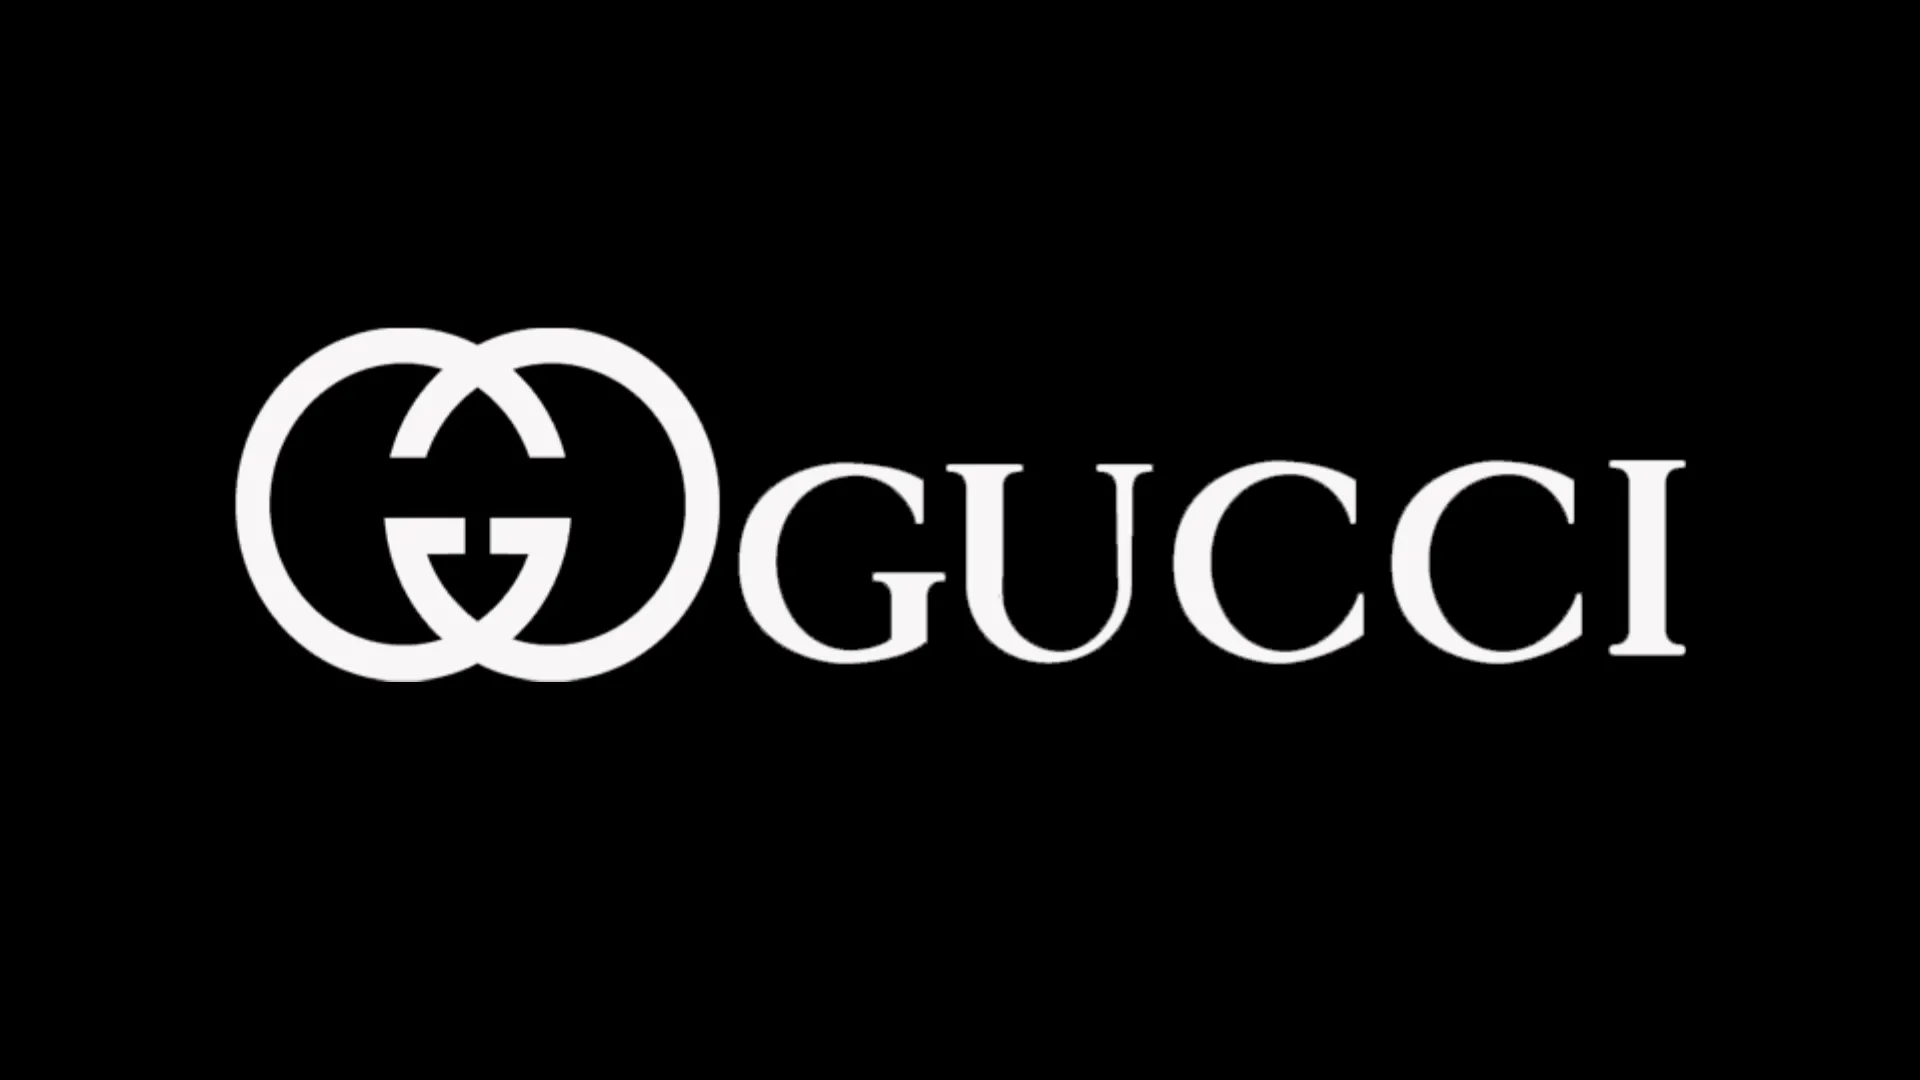 Fondos de Pantalla Gucci